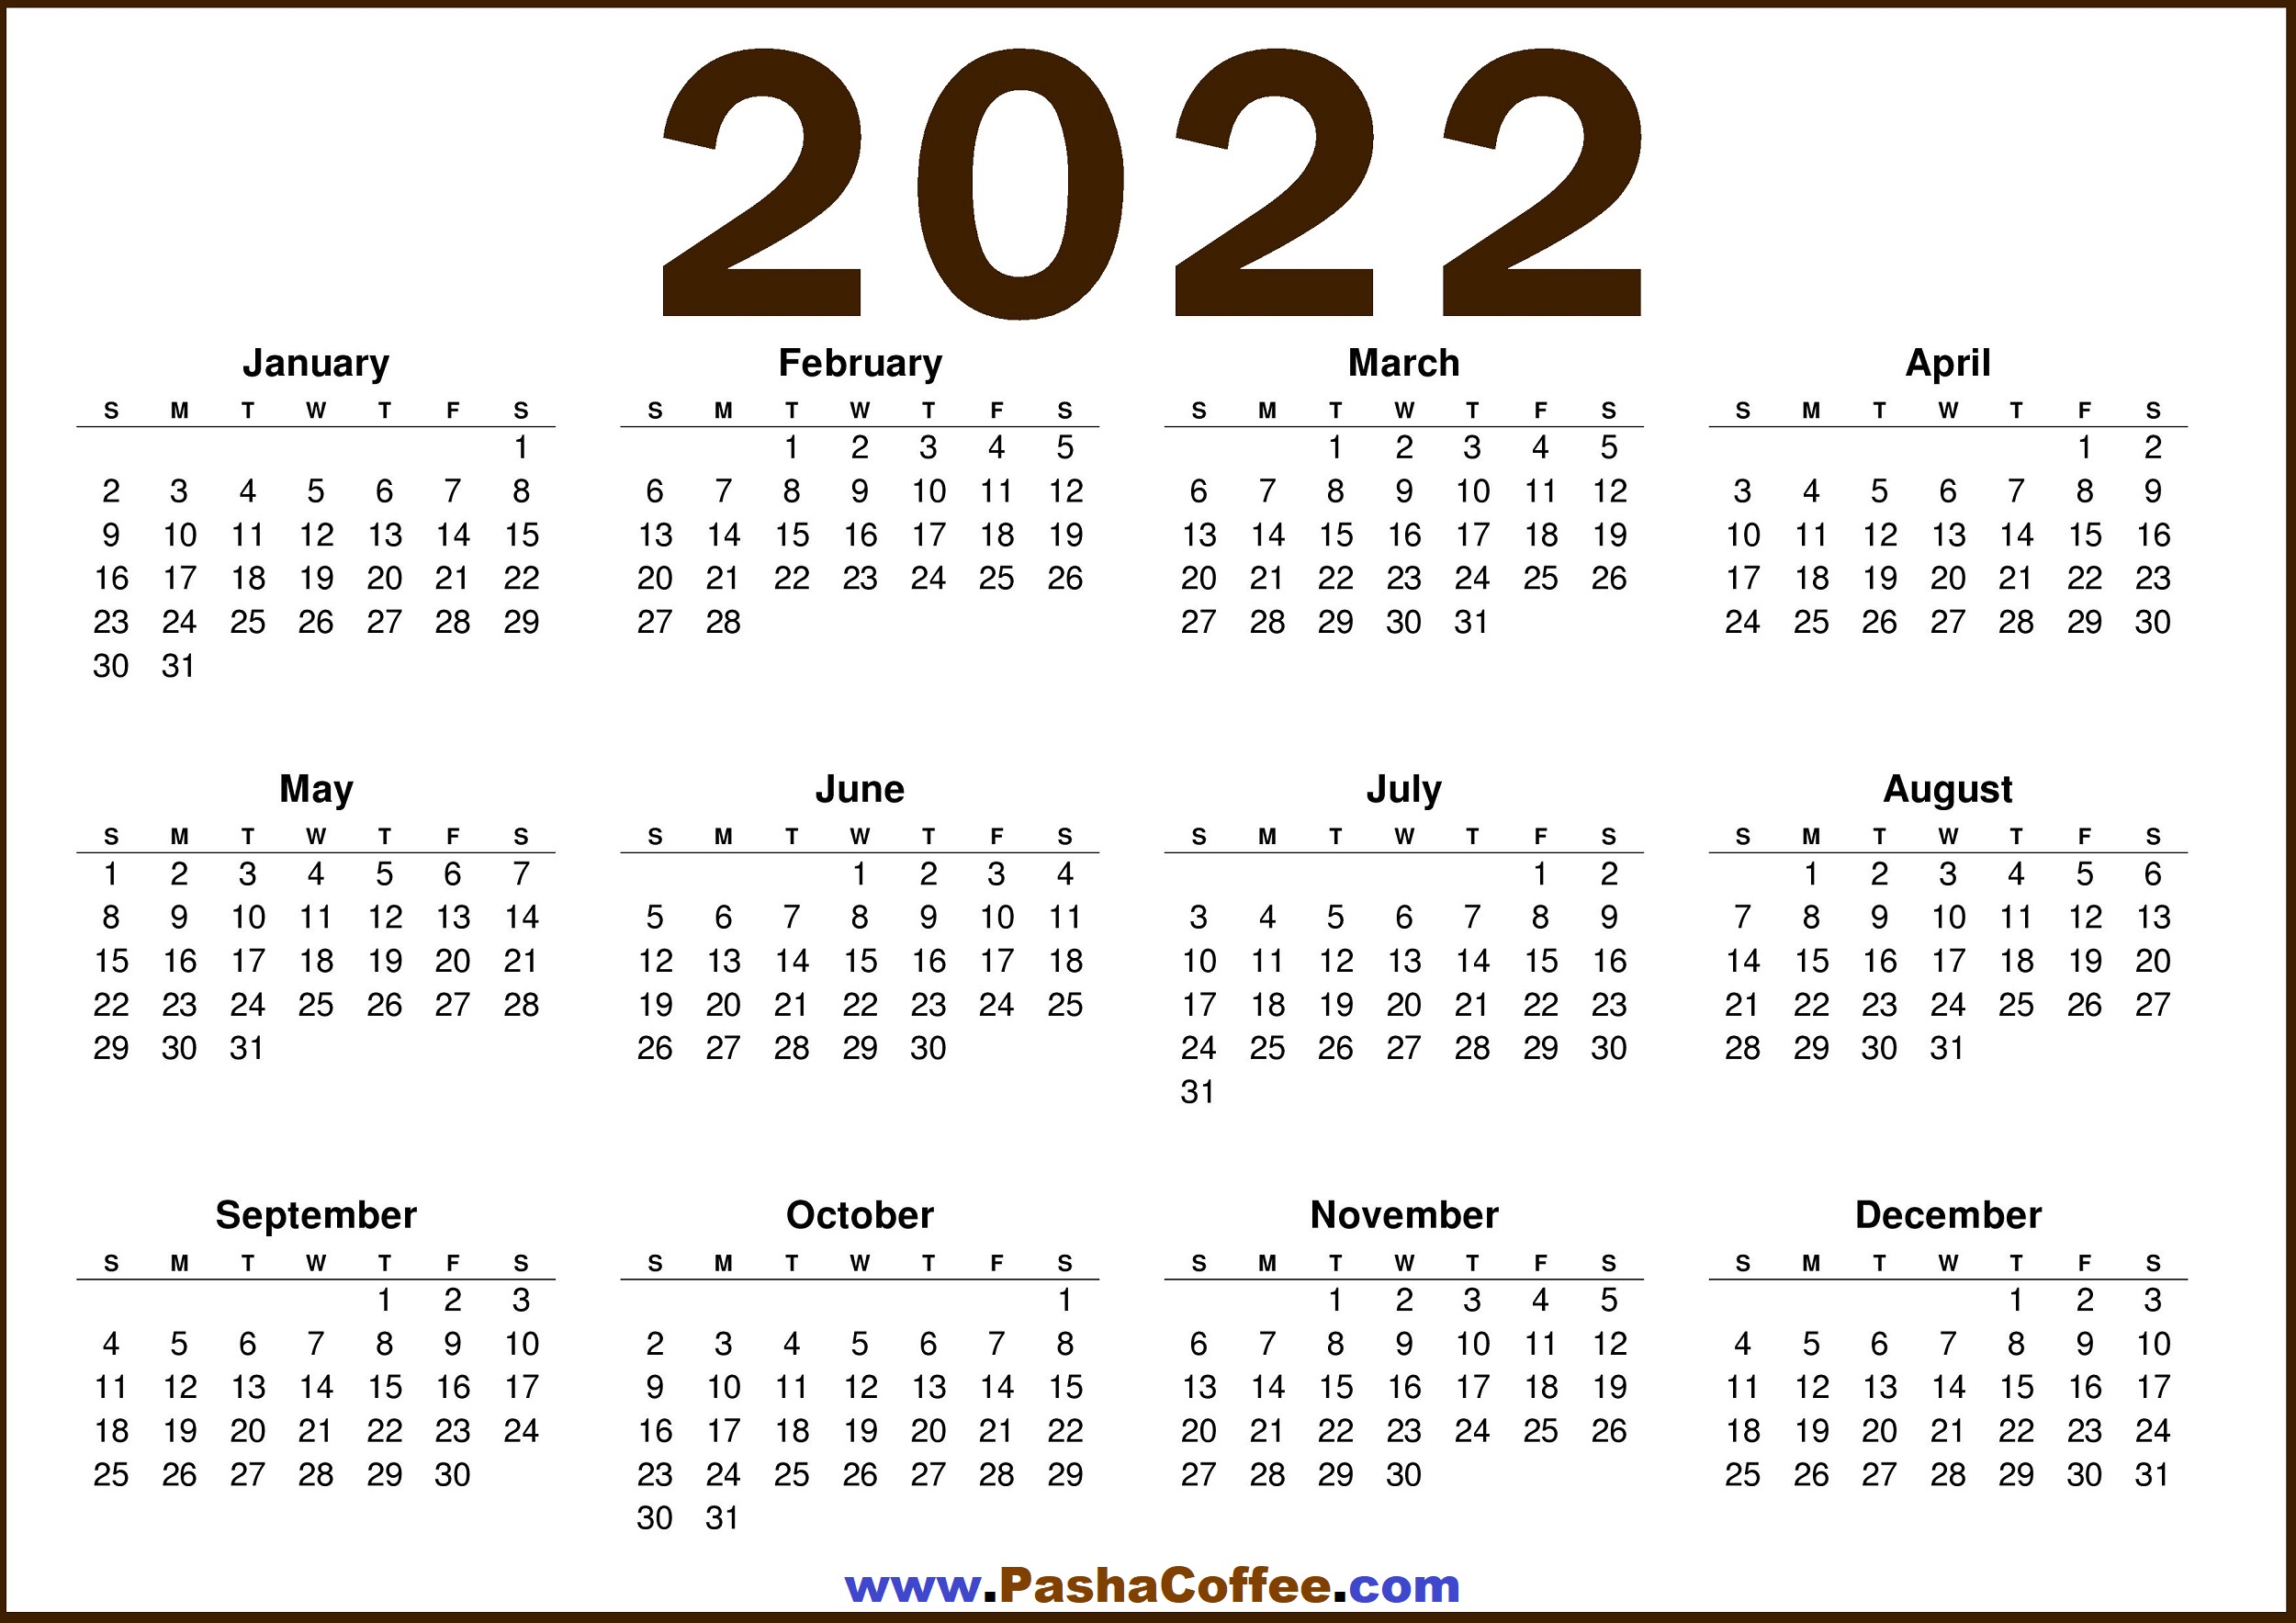 Free Calendar 2022 2022 Calendar Us – Free Printable 2022 Calendar – Pashacoffee.com